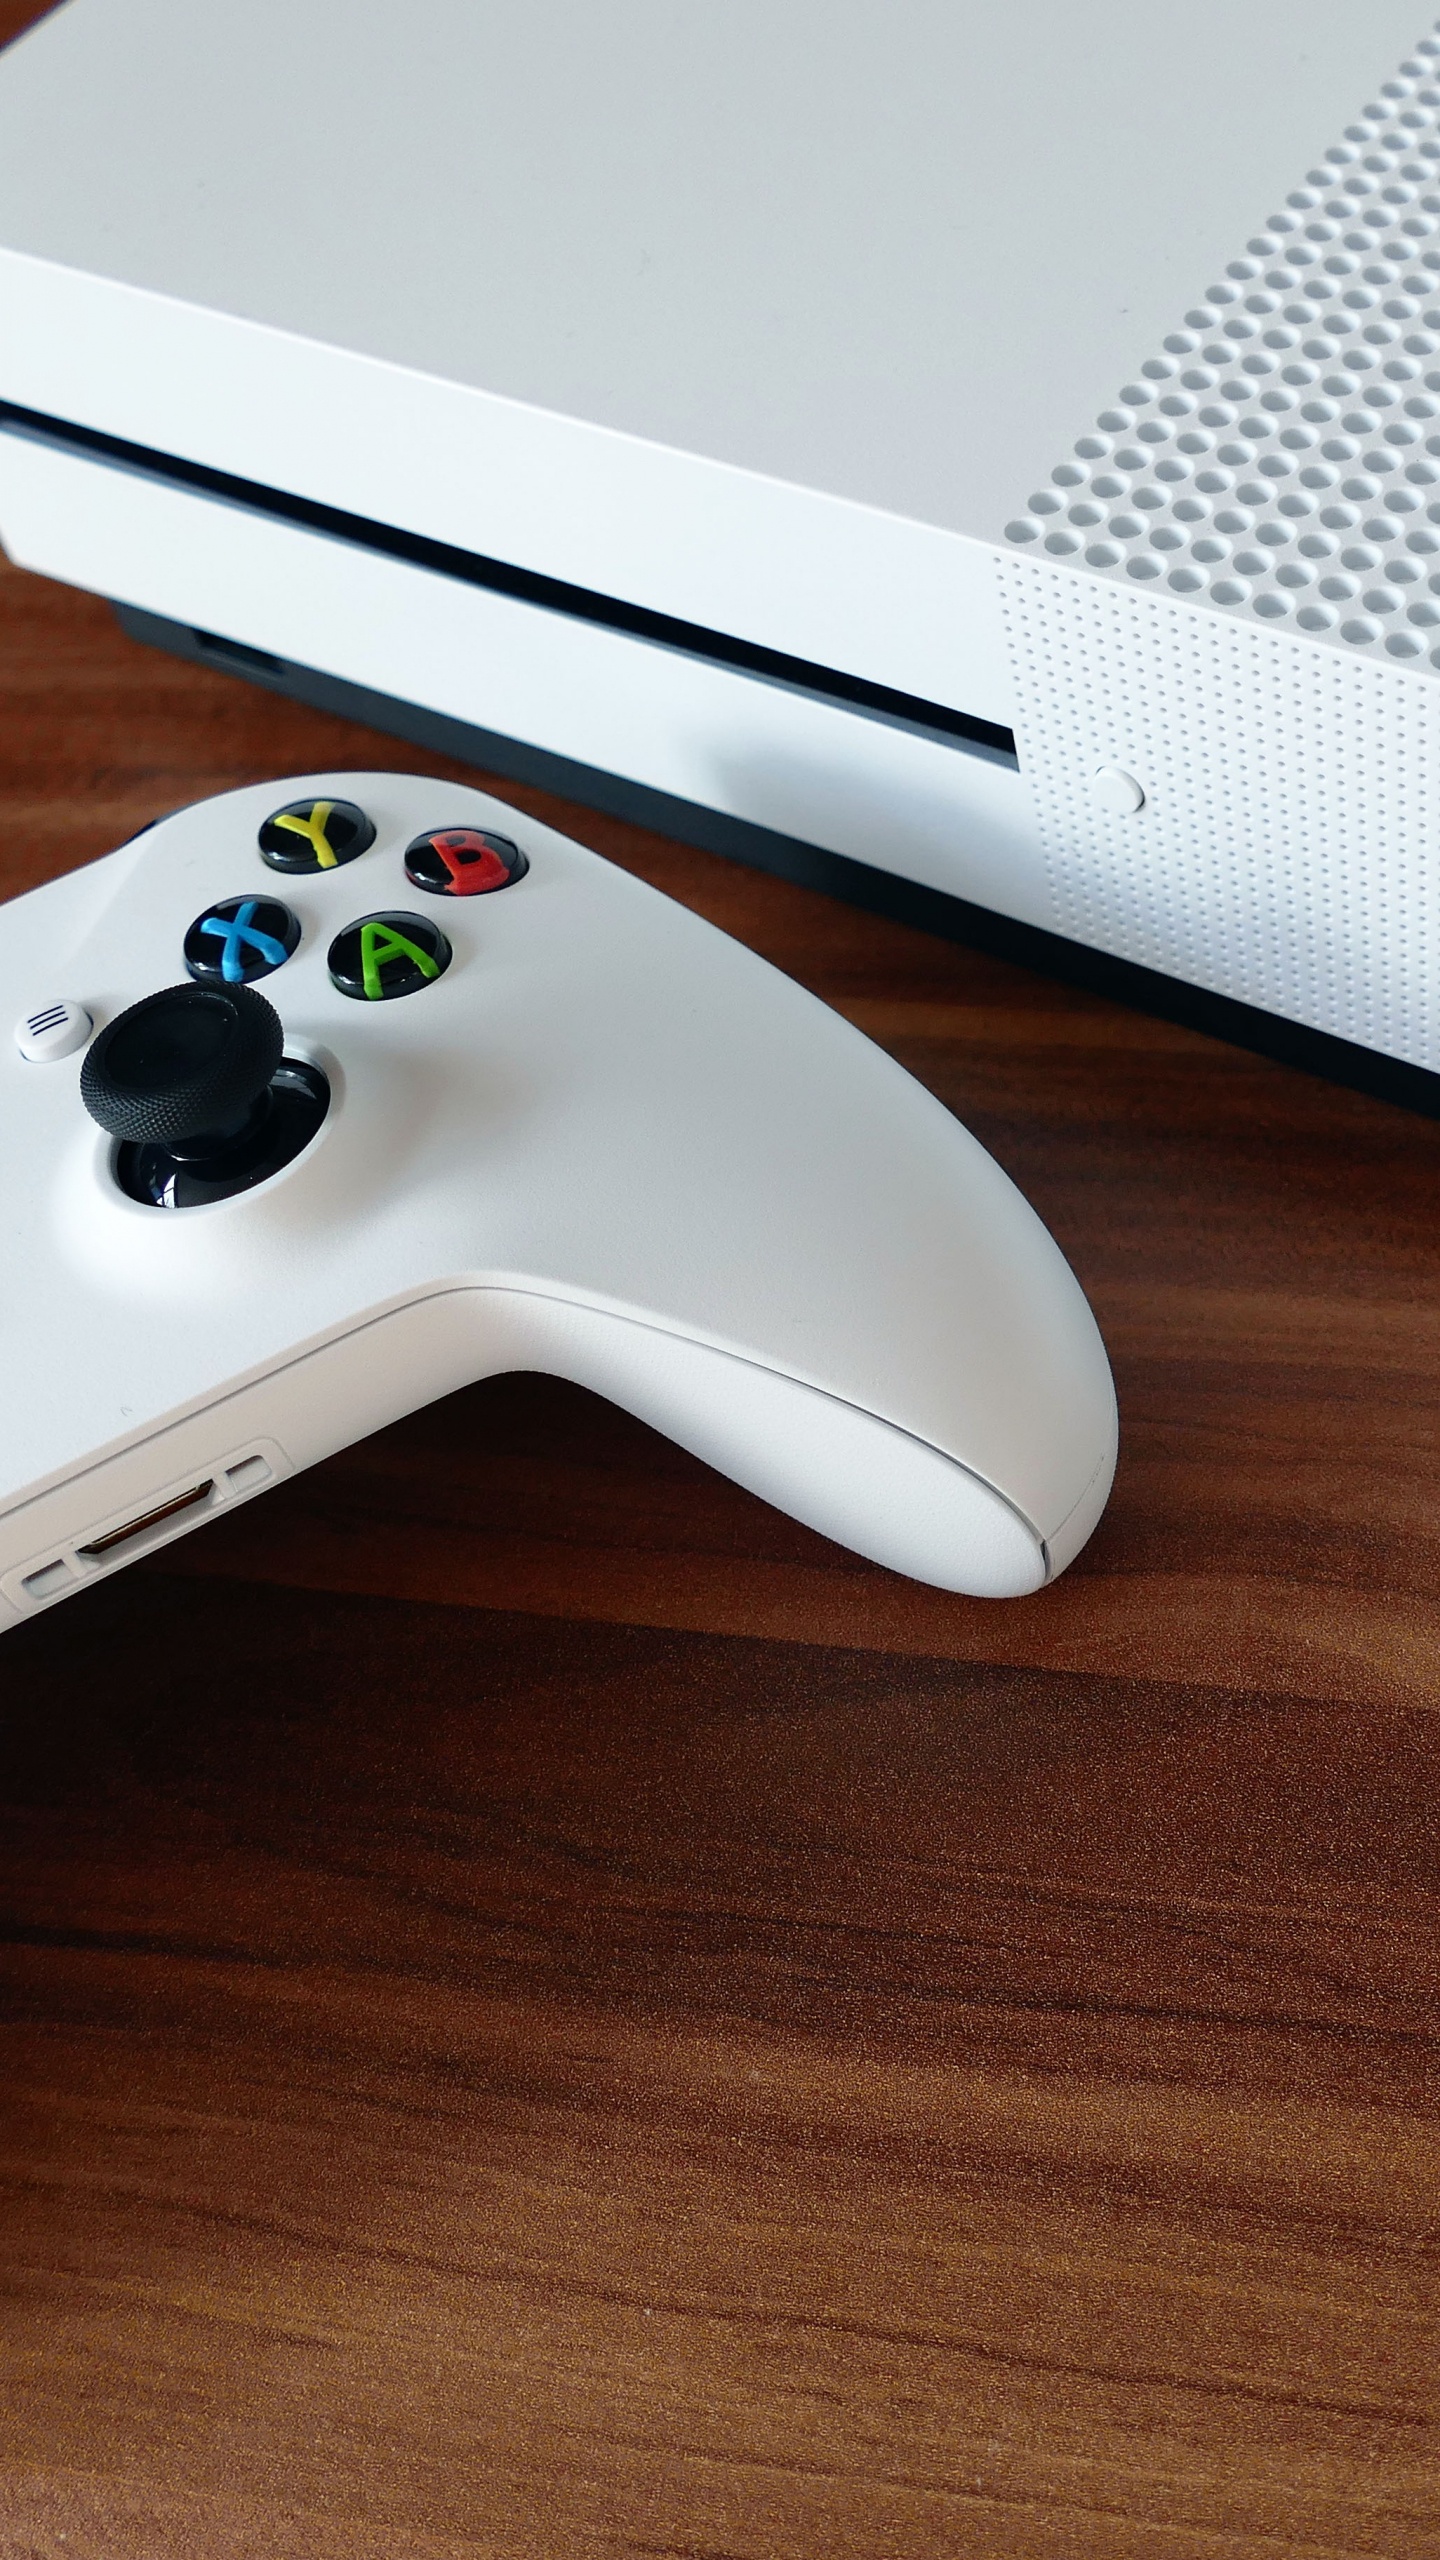 Consola Xbox One Blanca y Controlador de Juegos. Wallpaper in 1440x2560 Resolution